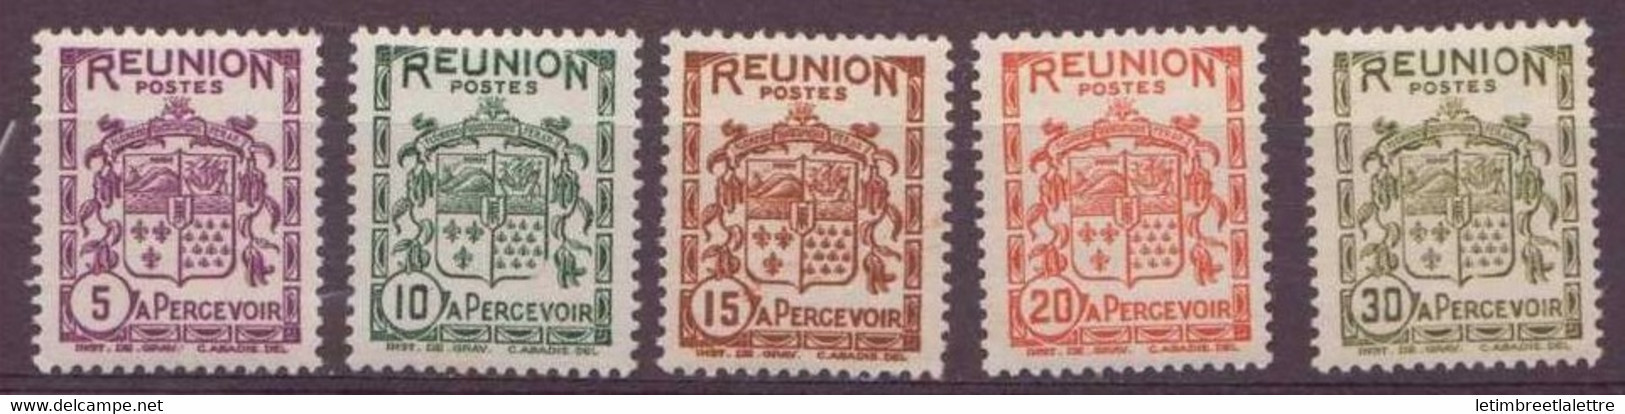 Réunion - Taxe - YT N° 16 à 20 **  - Neuf Sans Charnière - Postage Due